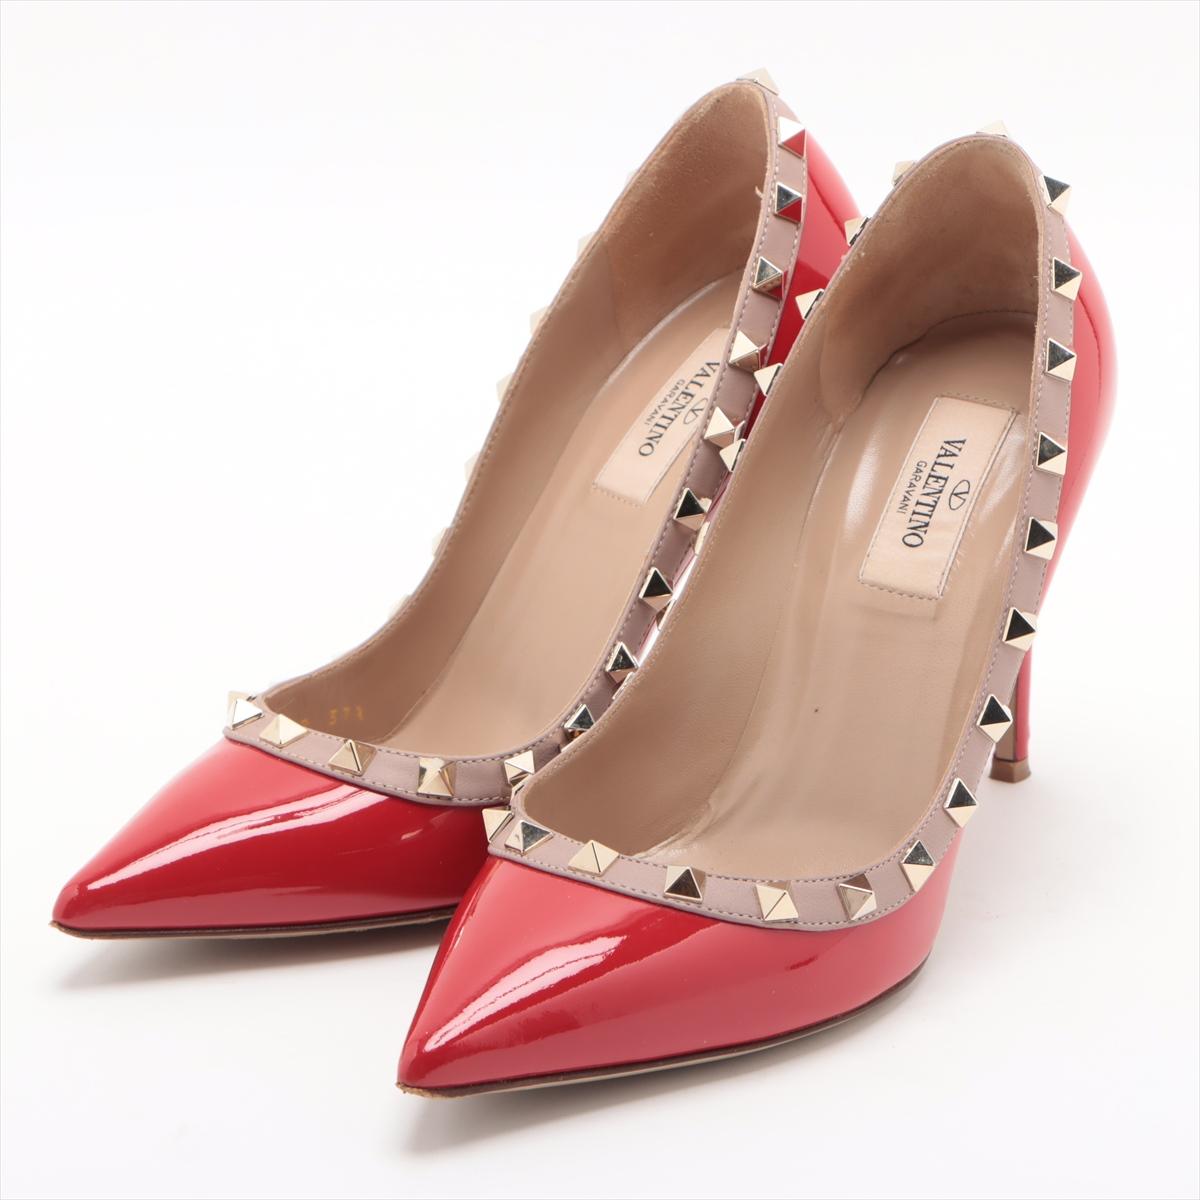 L'escarpin en cuir verni Valentino Garavani Rockstud à bout pointu en rouge est un choix de chaussures frappantes et élégantes qui exsudent la sophistication et le glamour. Confectionnés en cuir verni luxueux, ces escarpins présentent une silhouette